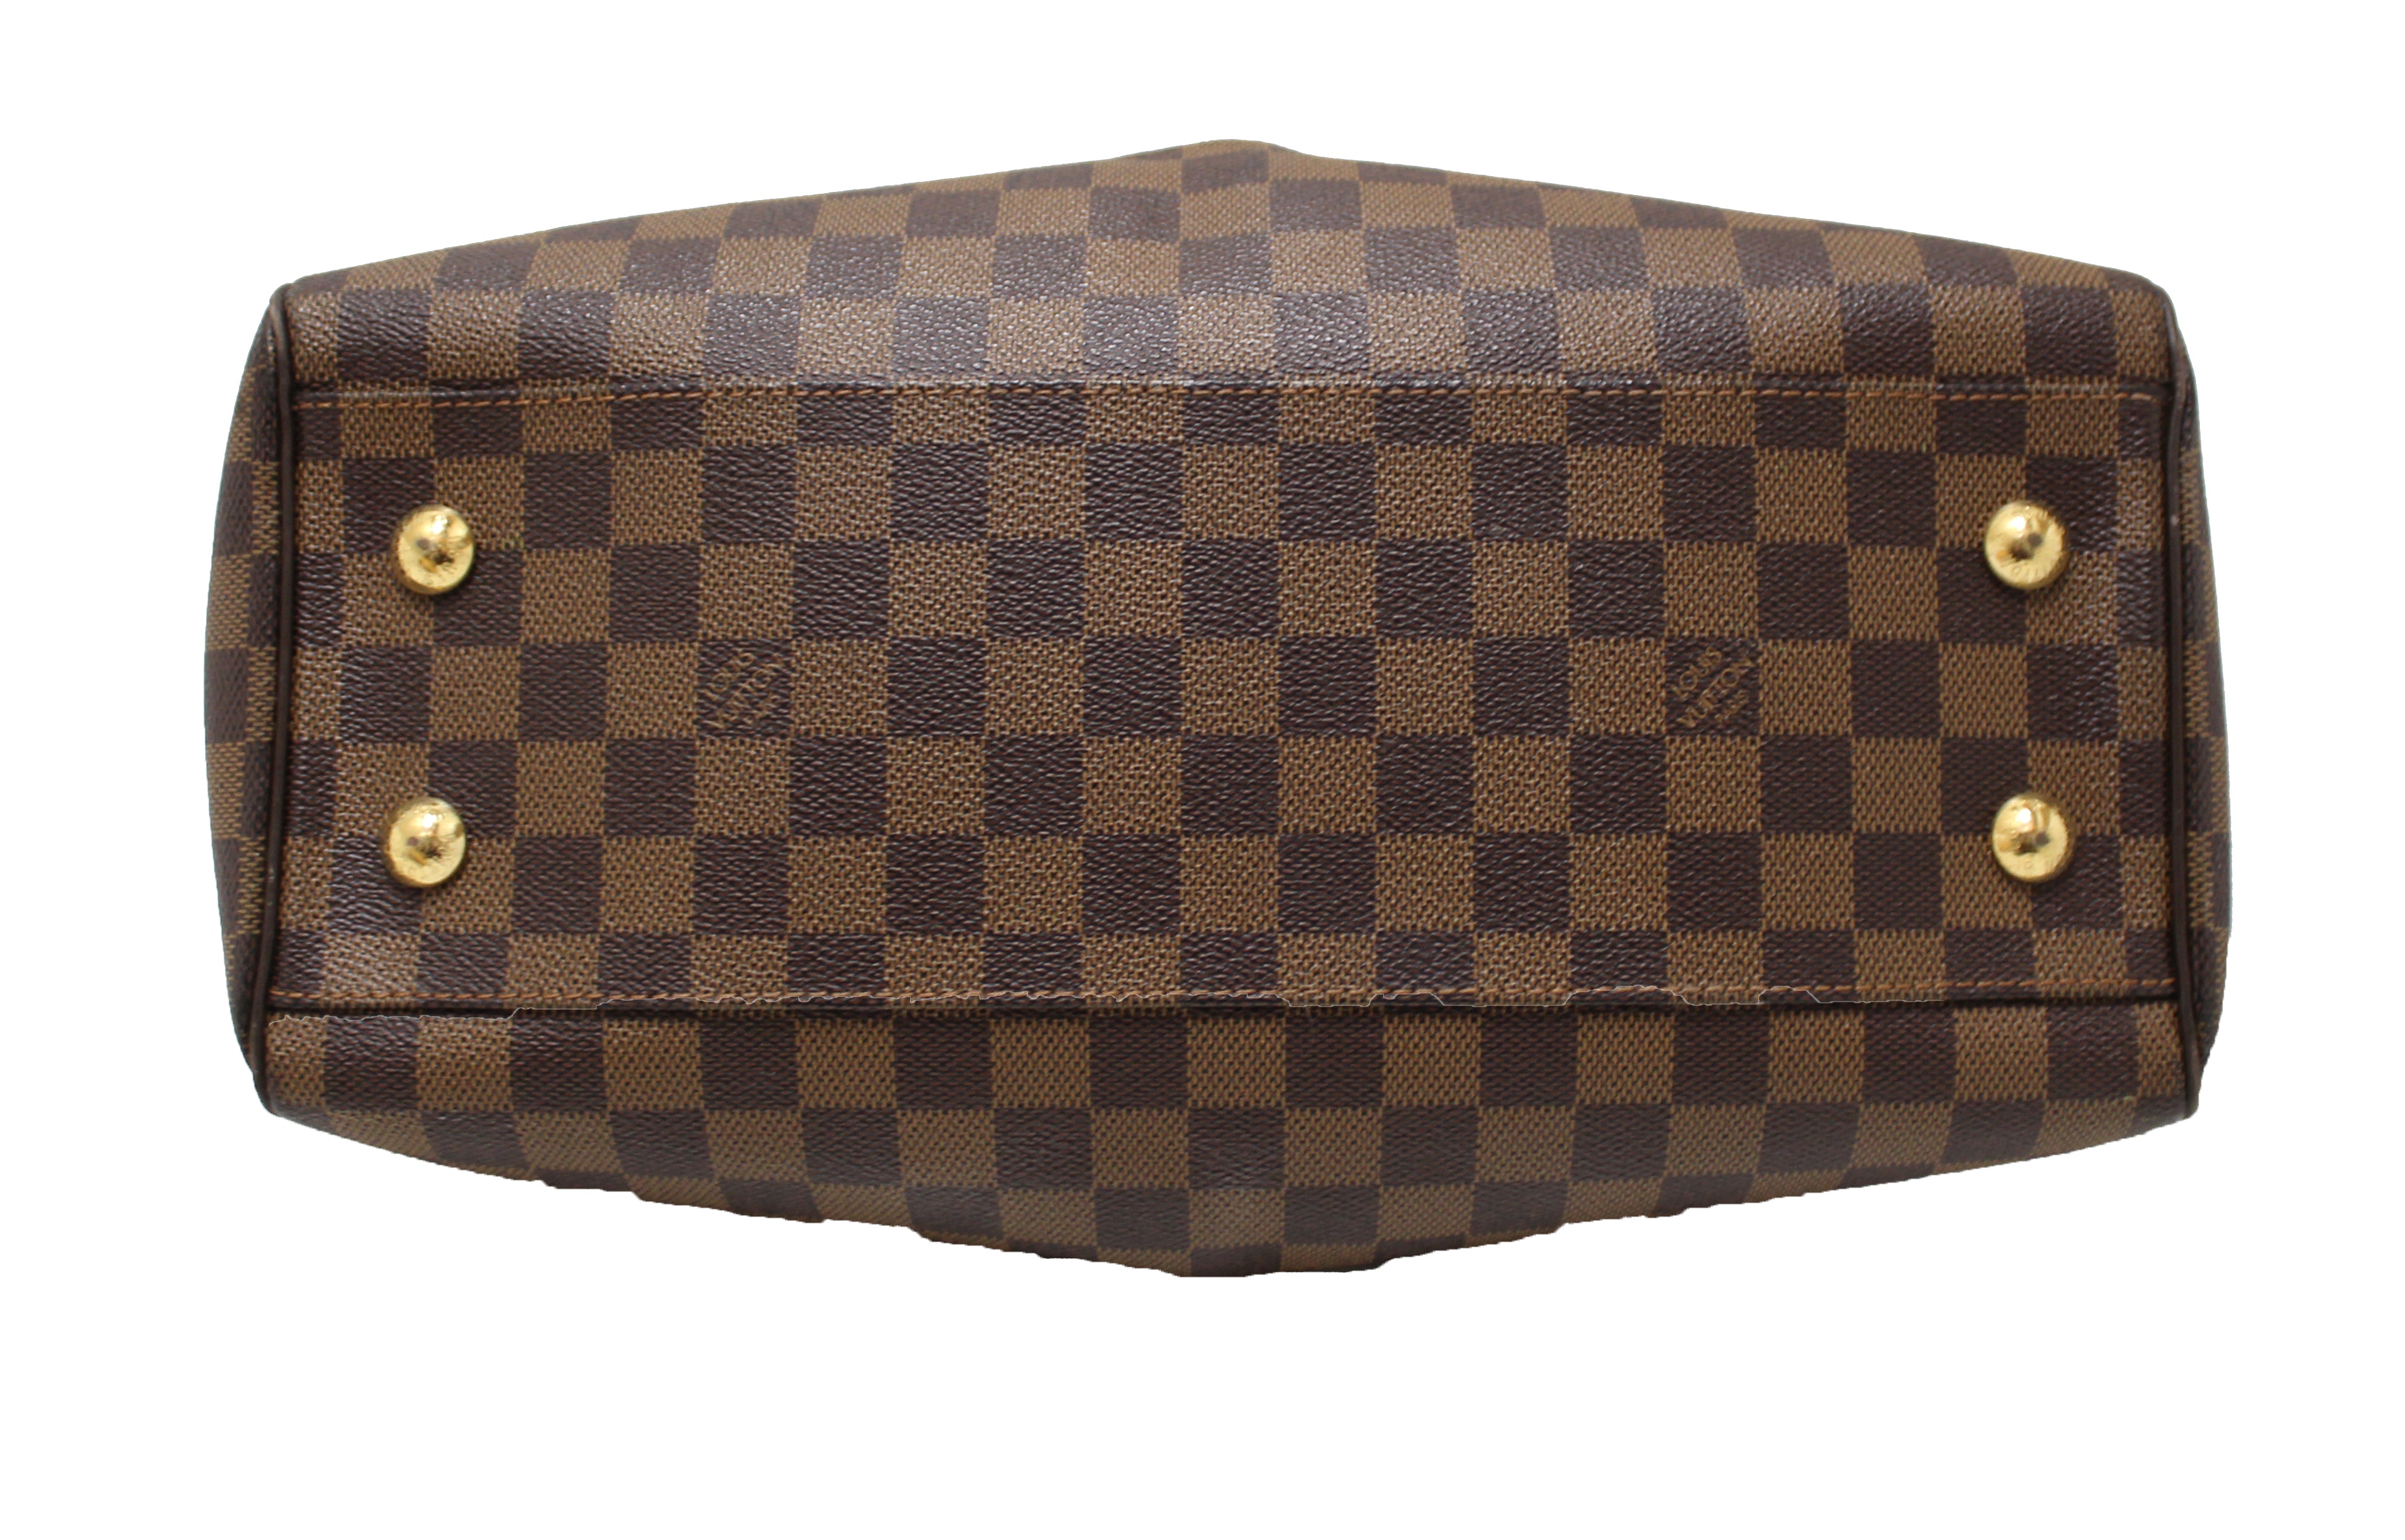 Authentic Louis Vuitton Damier Ebene Canvas Trevi PM Shoulder Bag